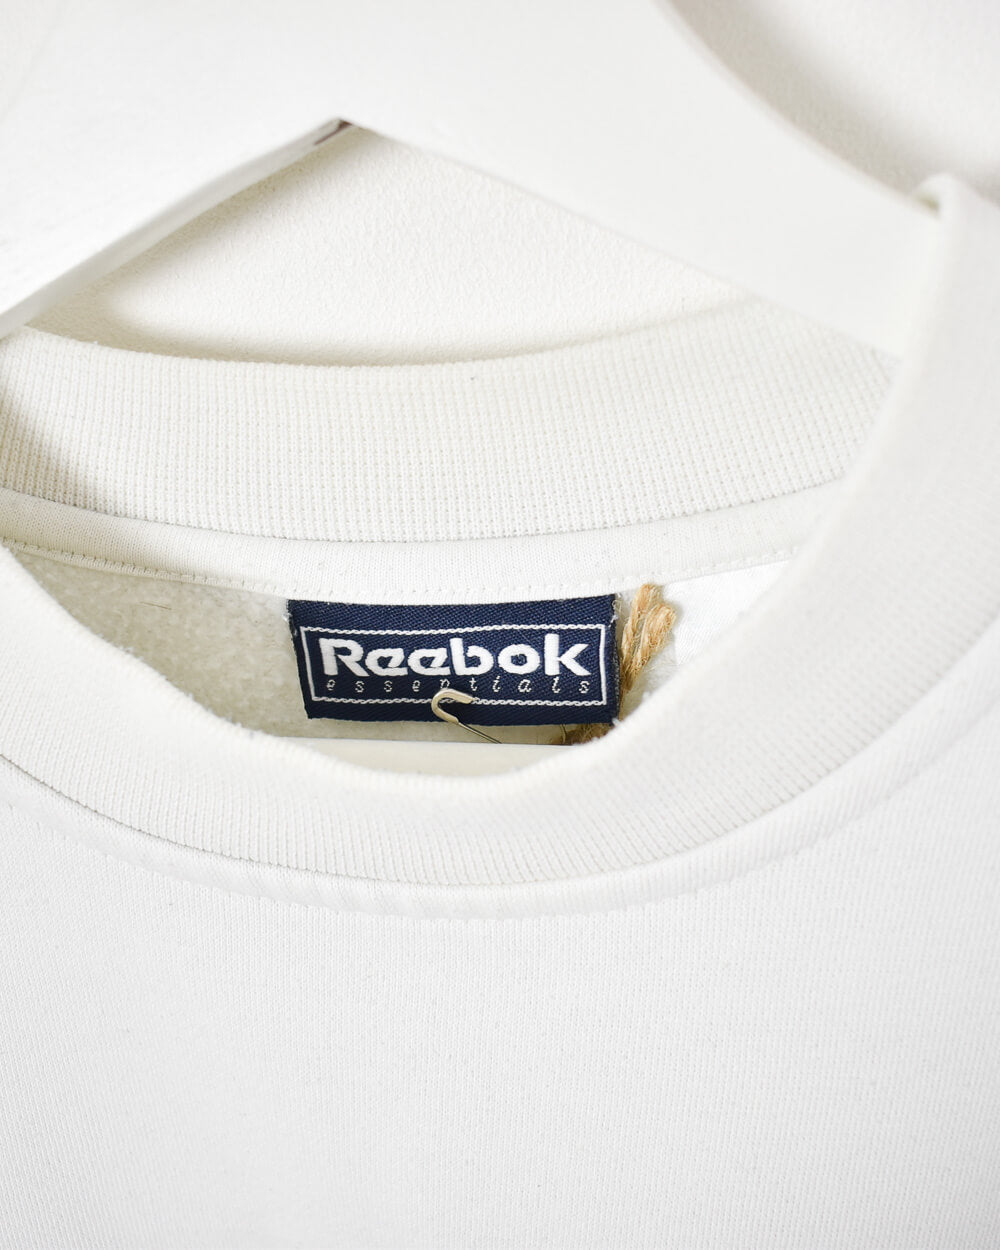 White Reebok Essentials Women's Sweatshirt - Medium 